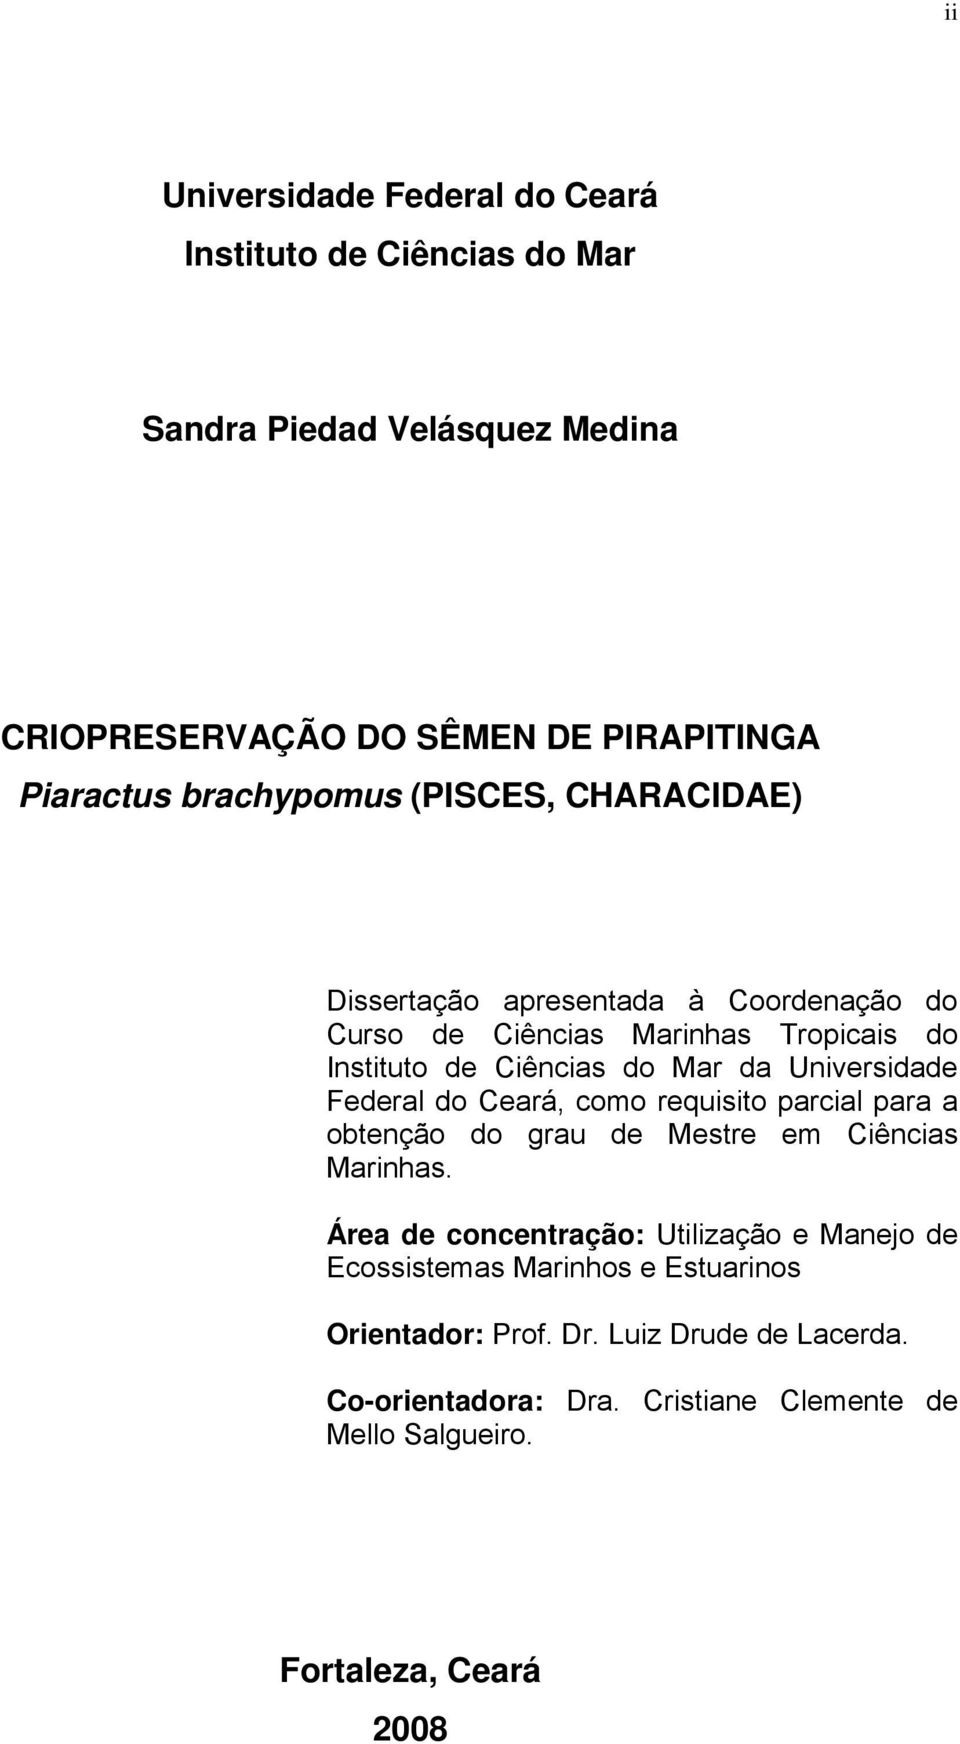 Universidade Federal do Ceará, como requisito parcial para a obtenção do grau de Mestre em Ciências Marinhas.